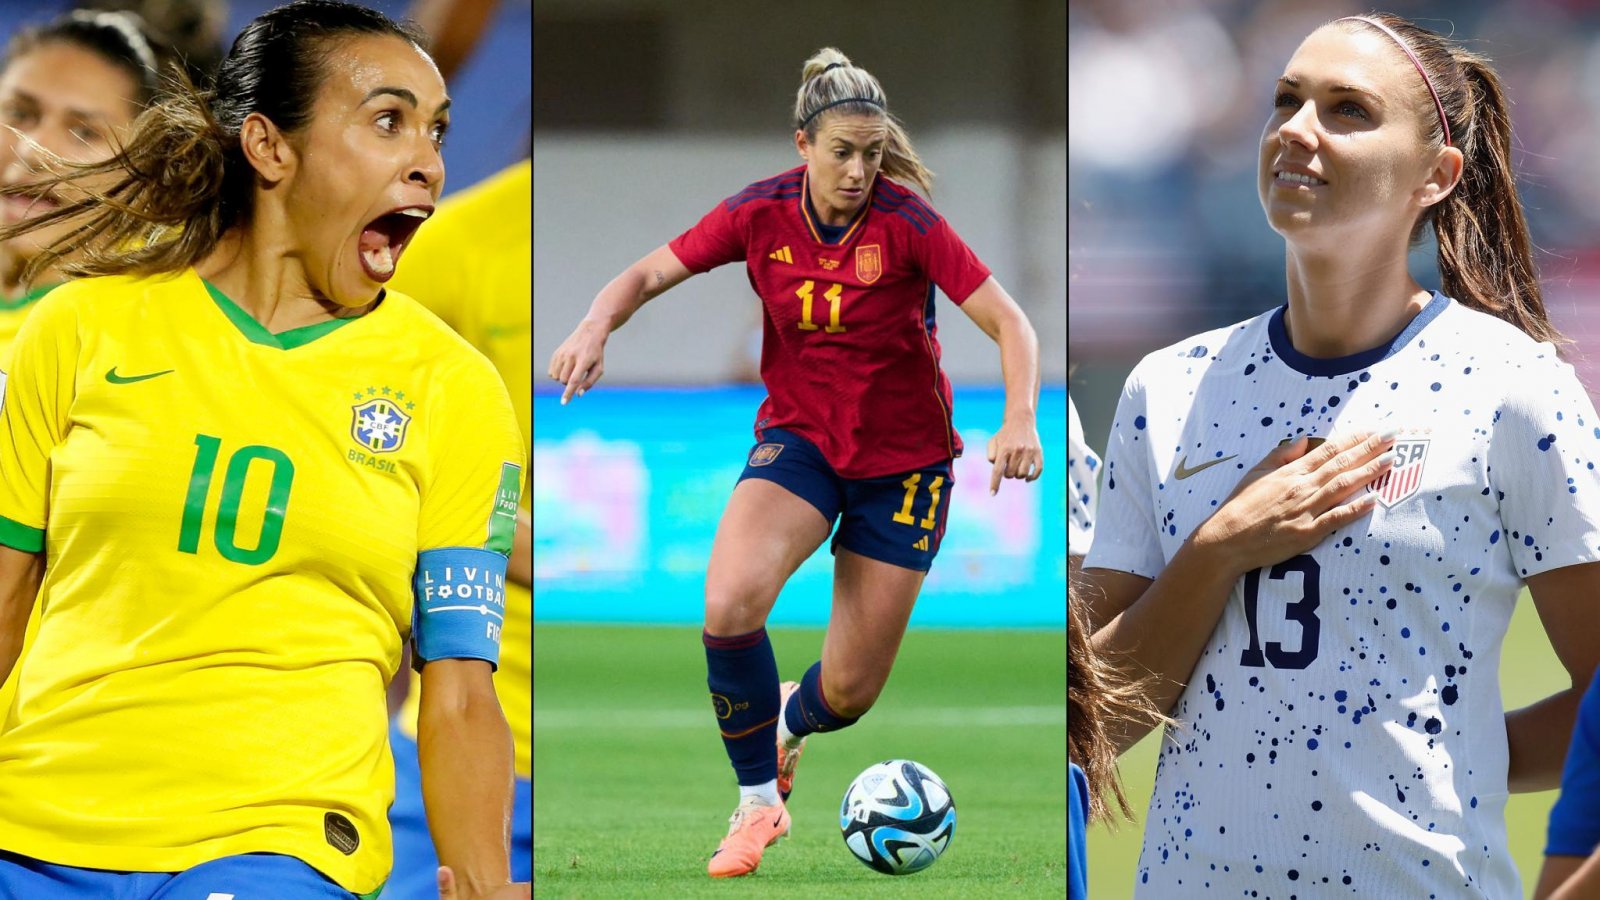 Comienza el Mundial Femenino: 12 futbolistas que no te puedes perder |  24horas